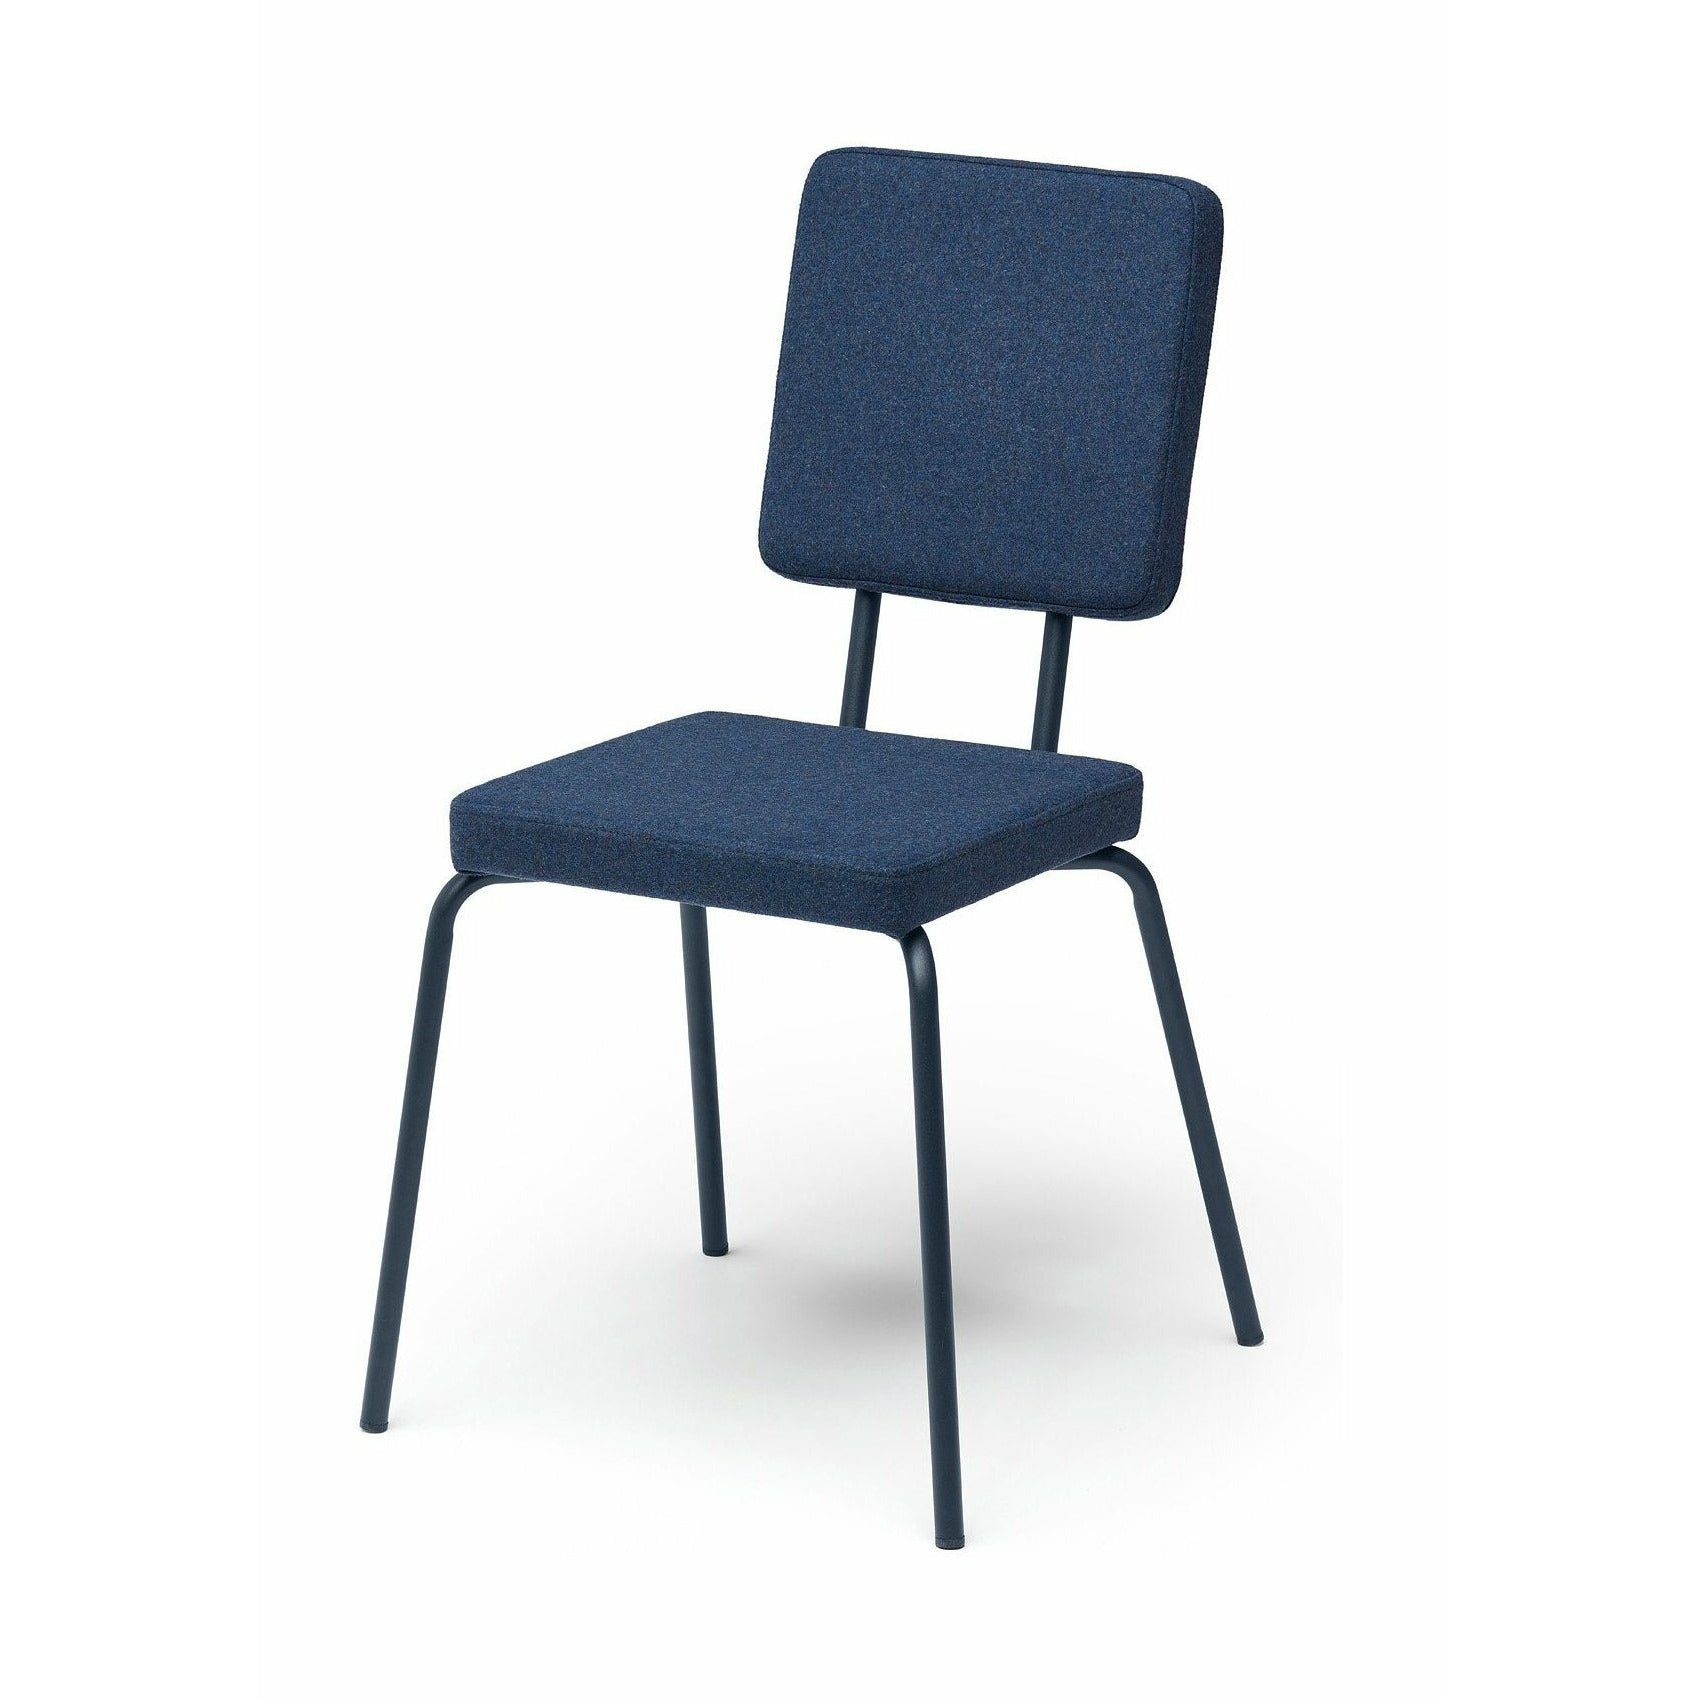 Sedile della sedia opzione Puik e schienale, blu scuro